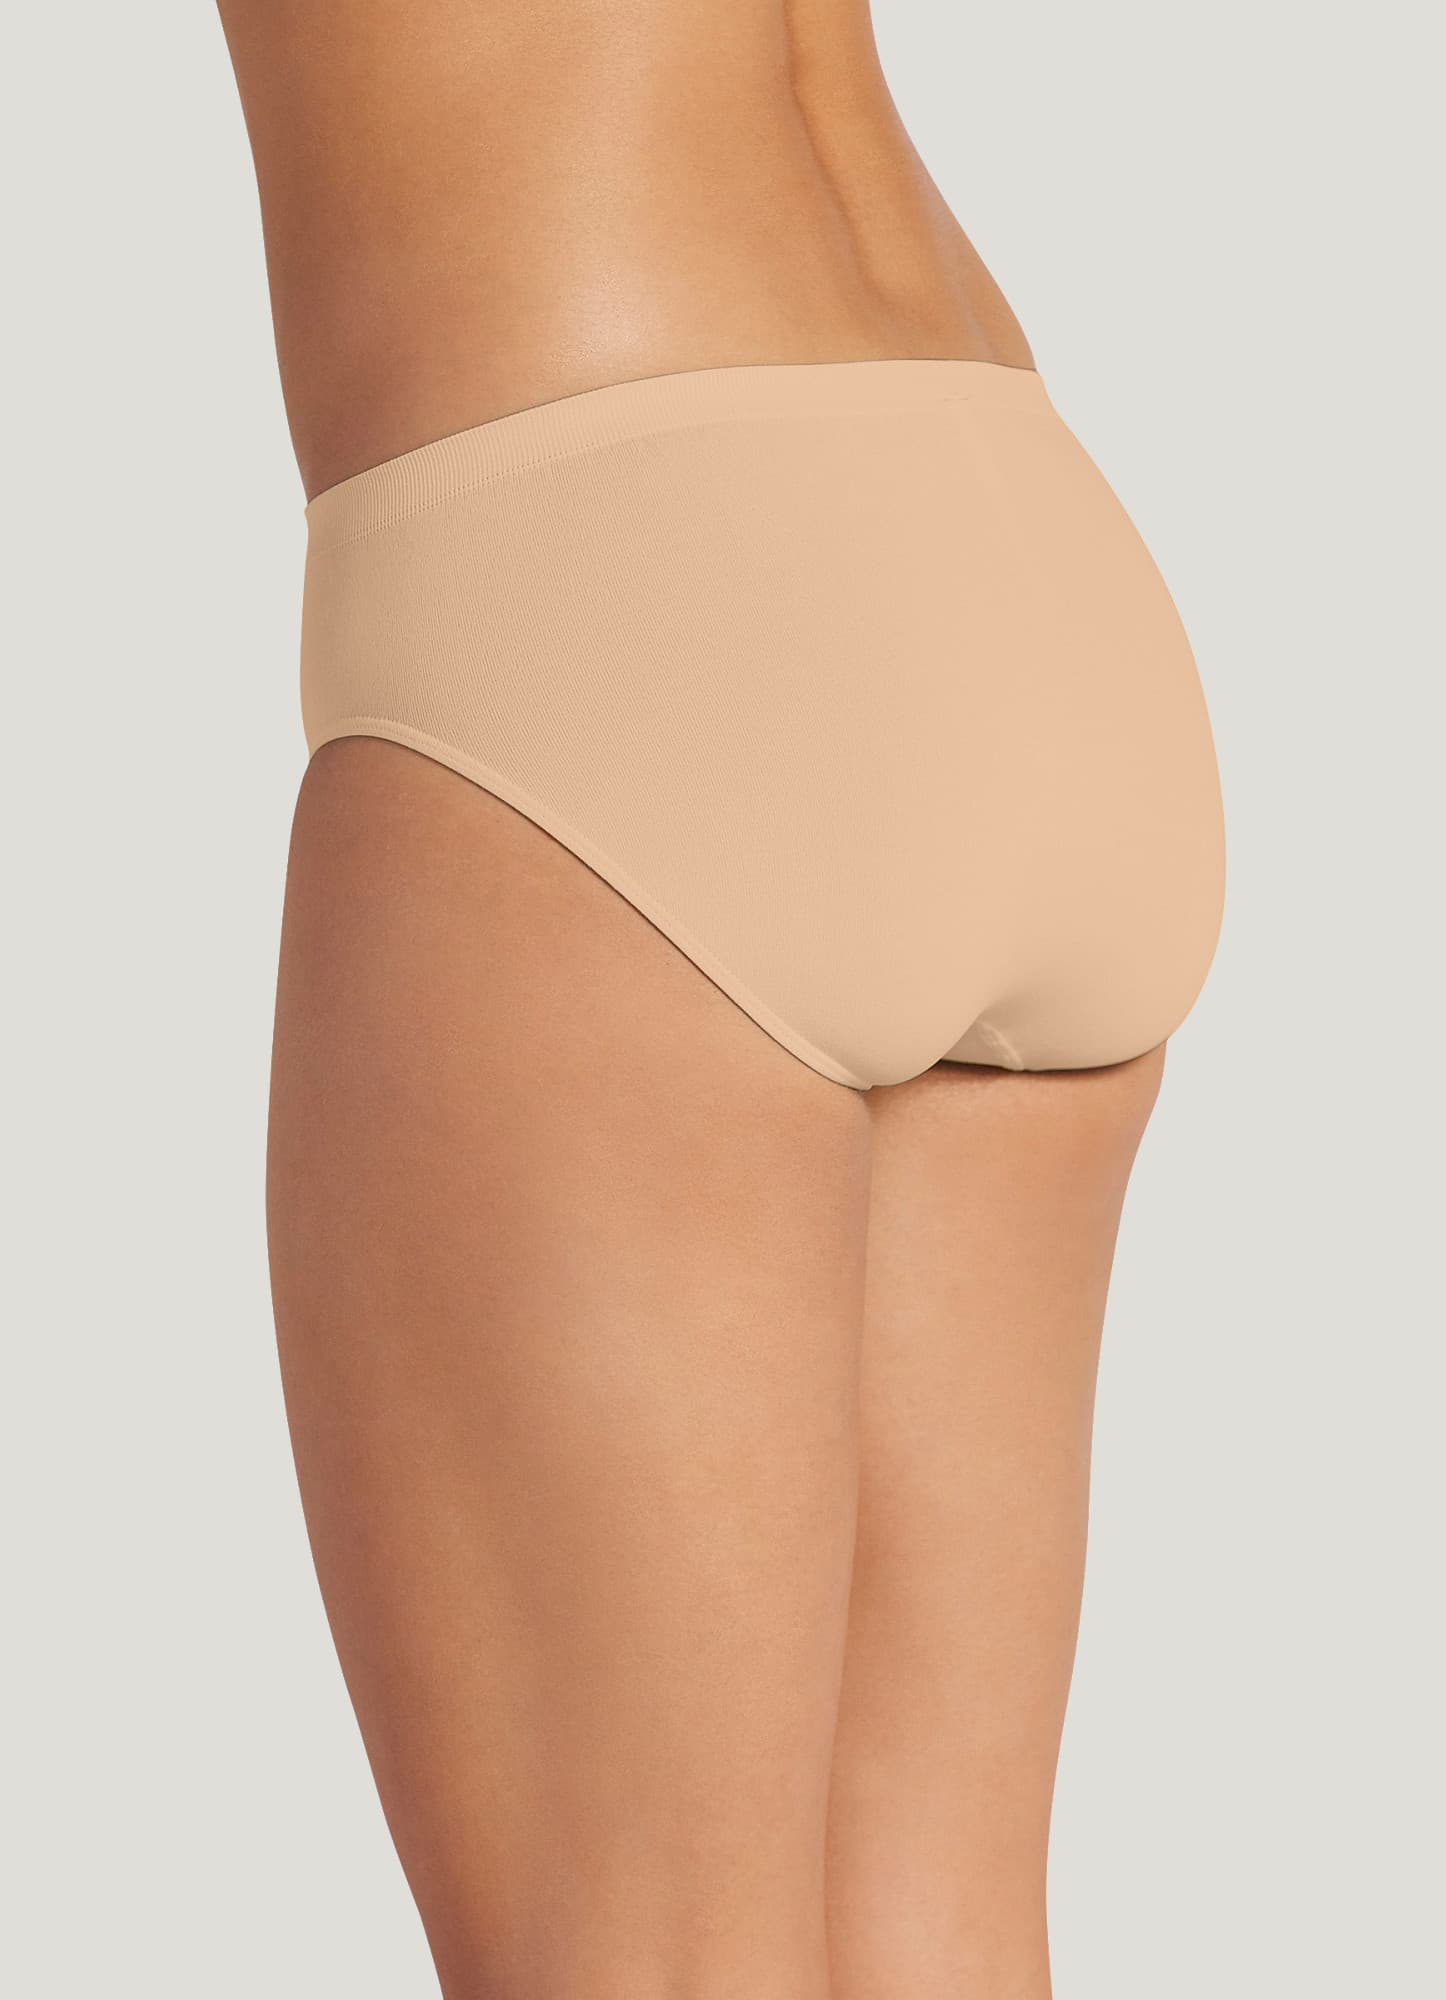 Jockey Women's Underwear Comfies Microfiber French Cut - 3 Pack